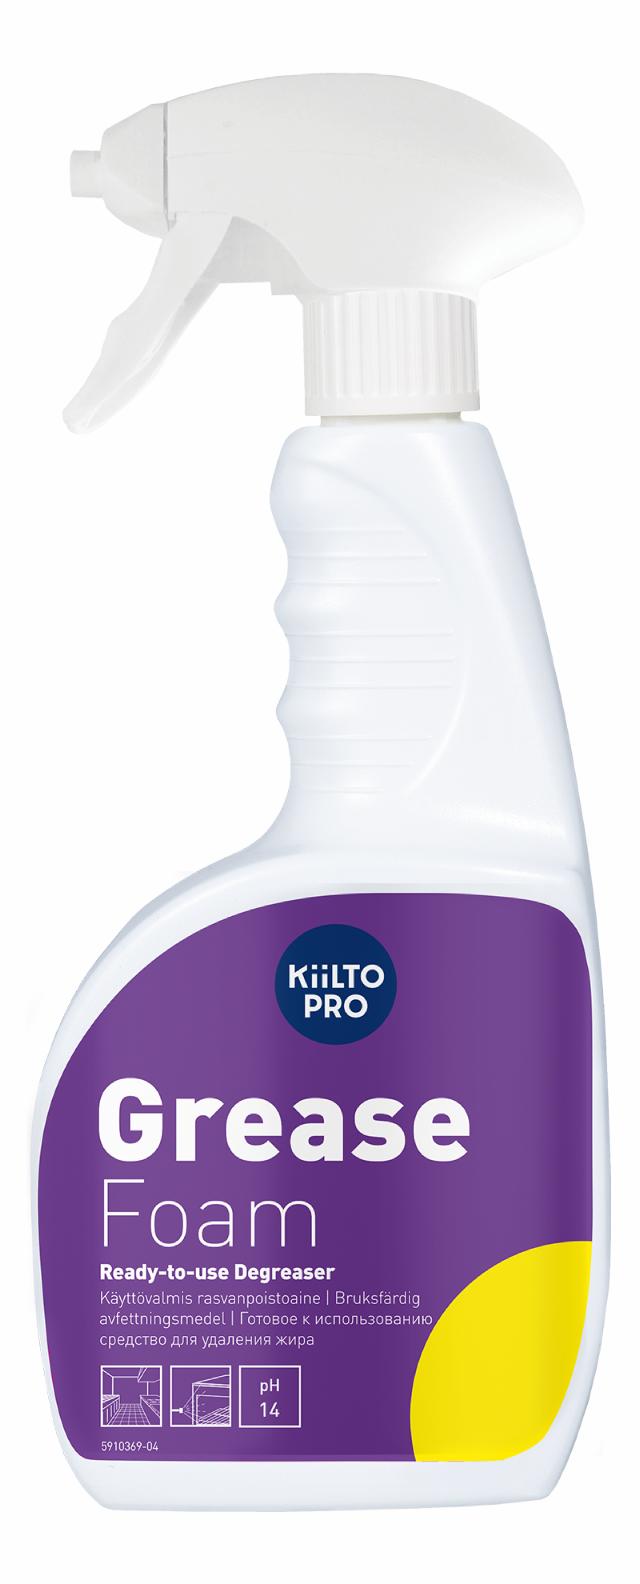 KiiltoPro Grease Foam 750 ml